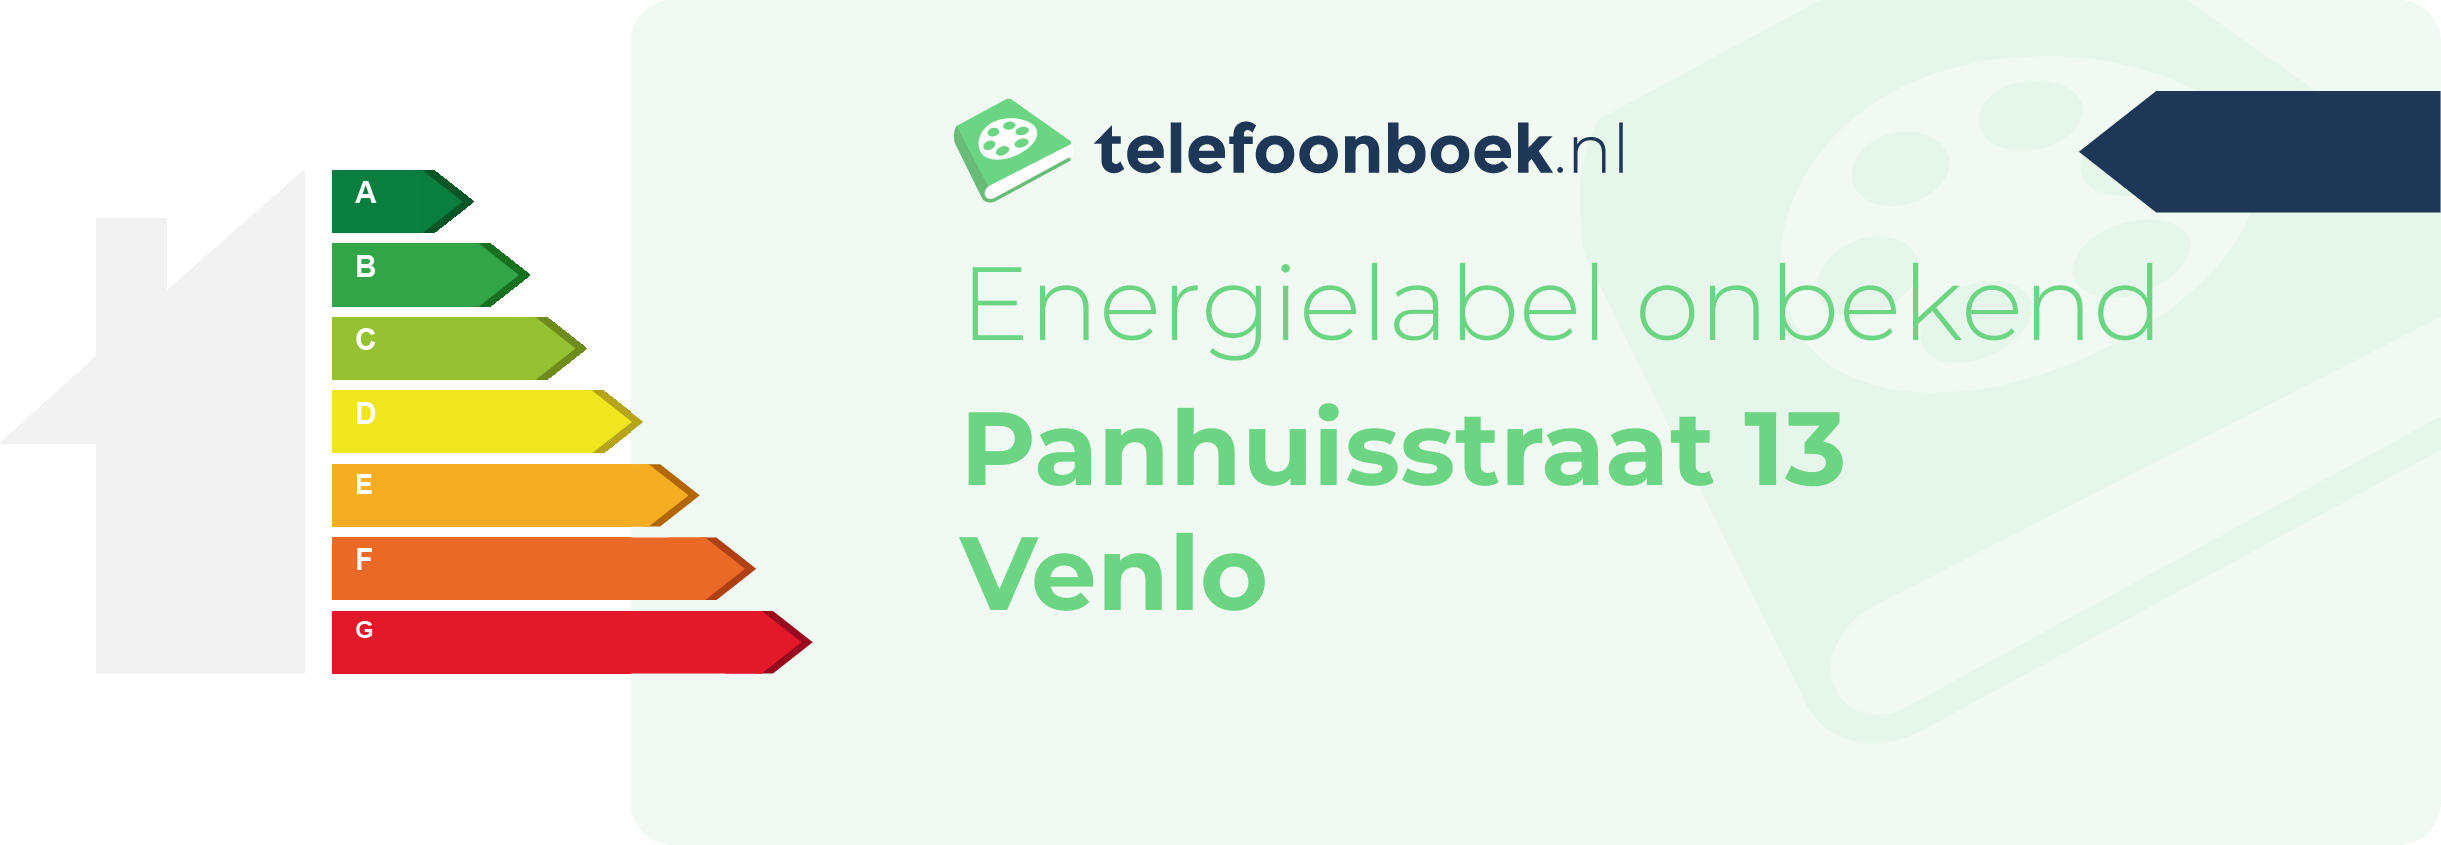 Energielabel Panhuisstraat 13 Venlo